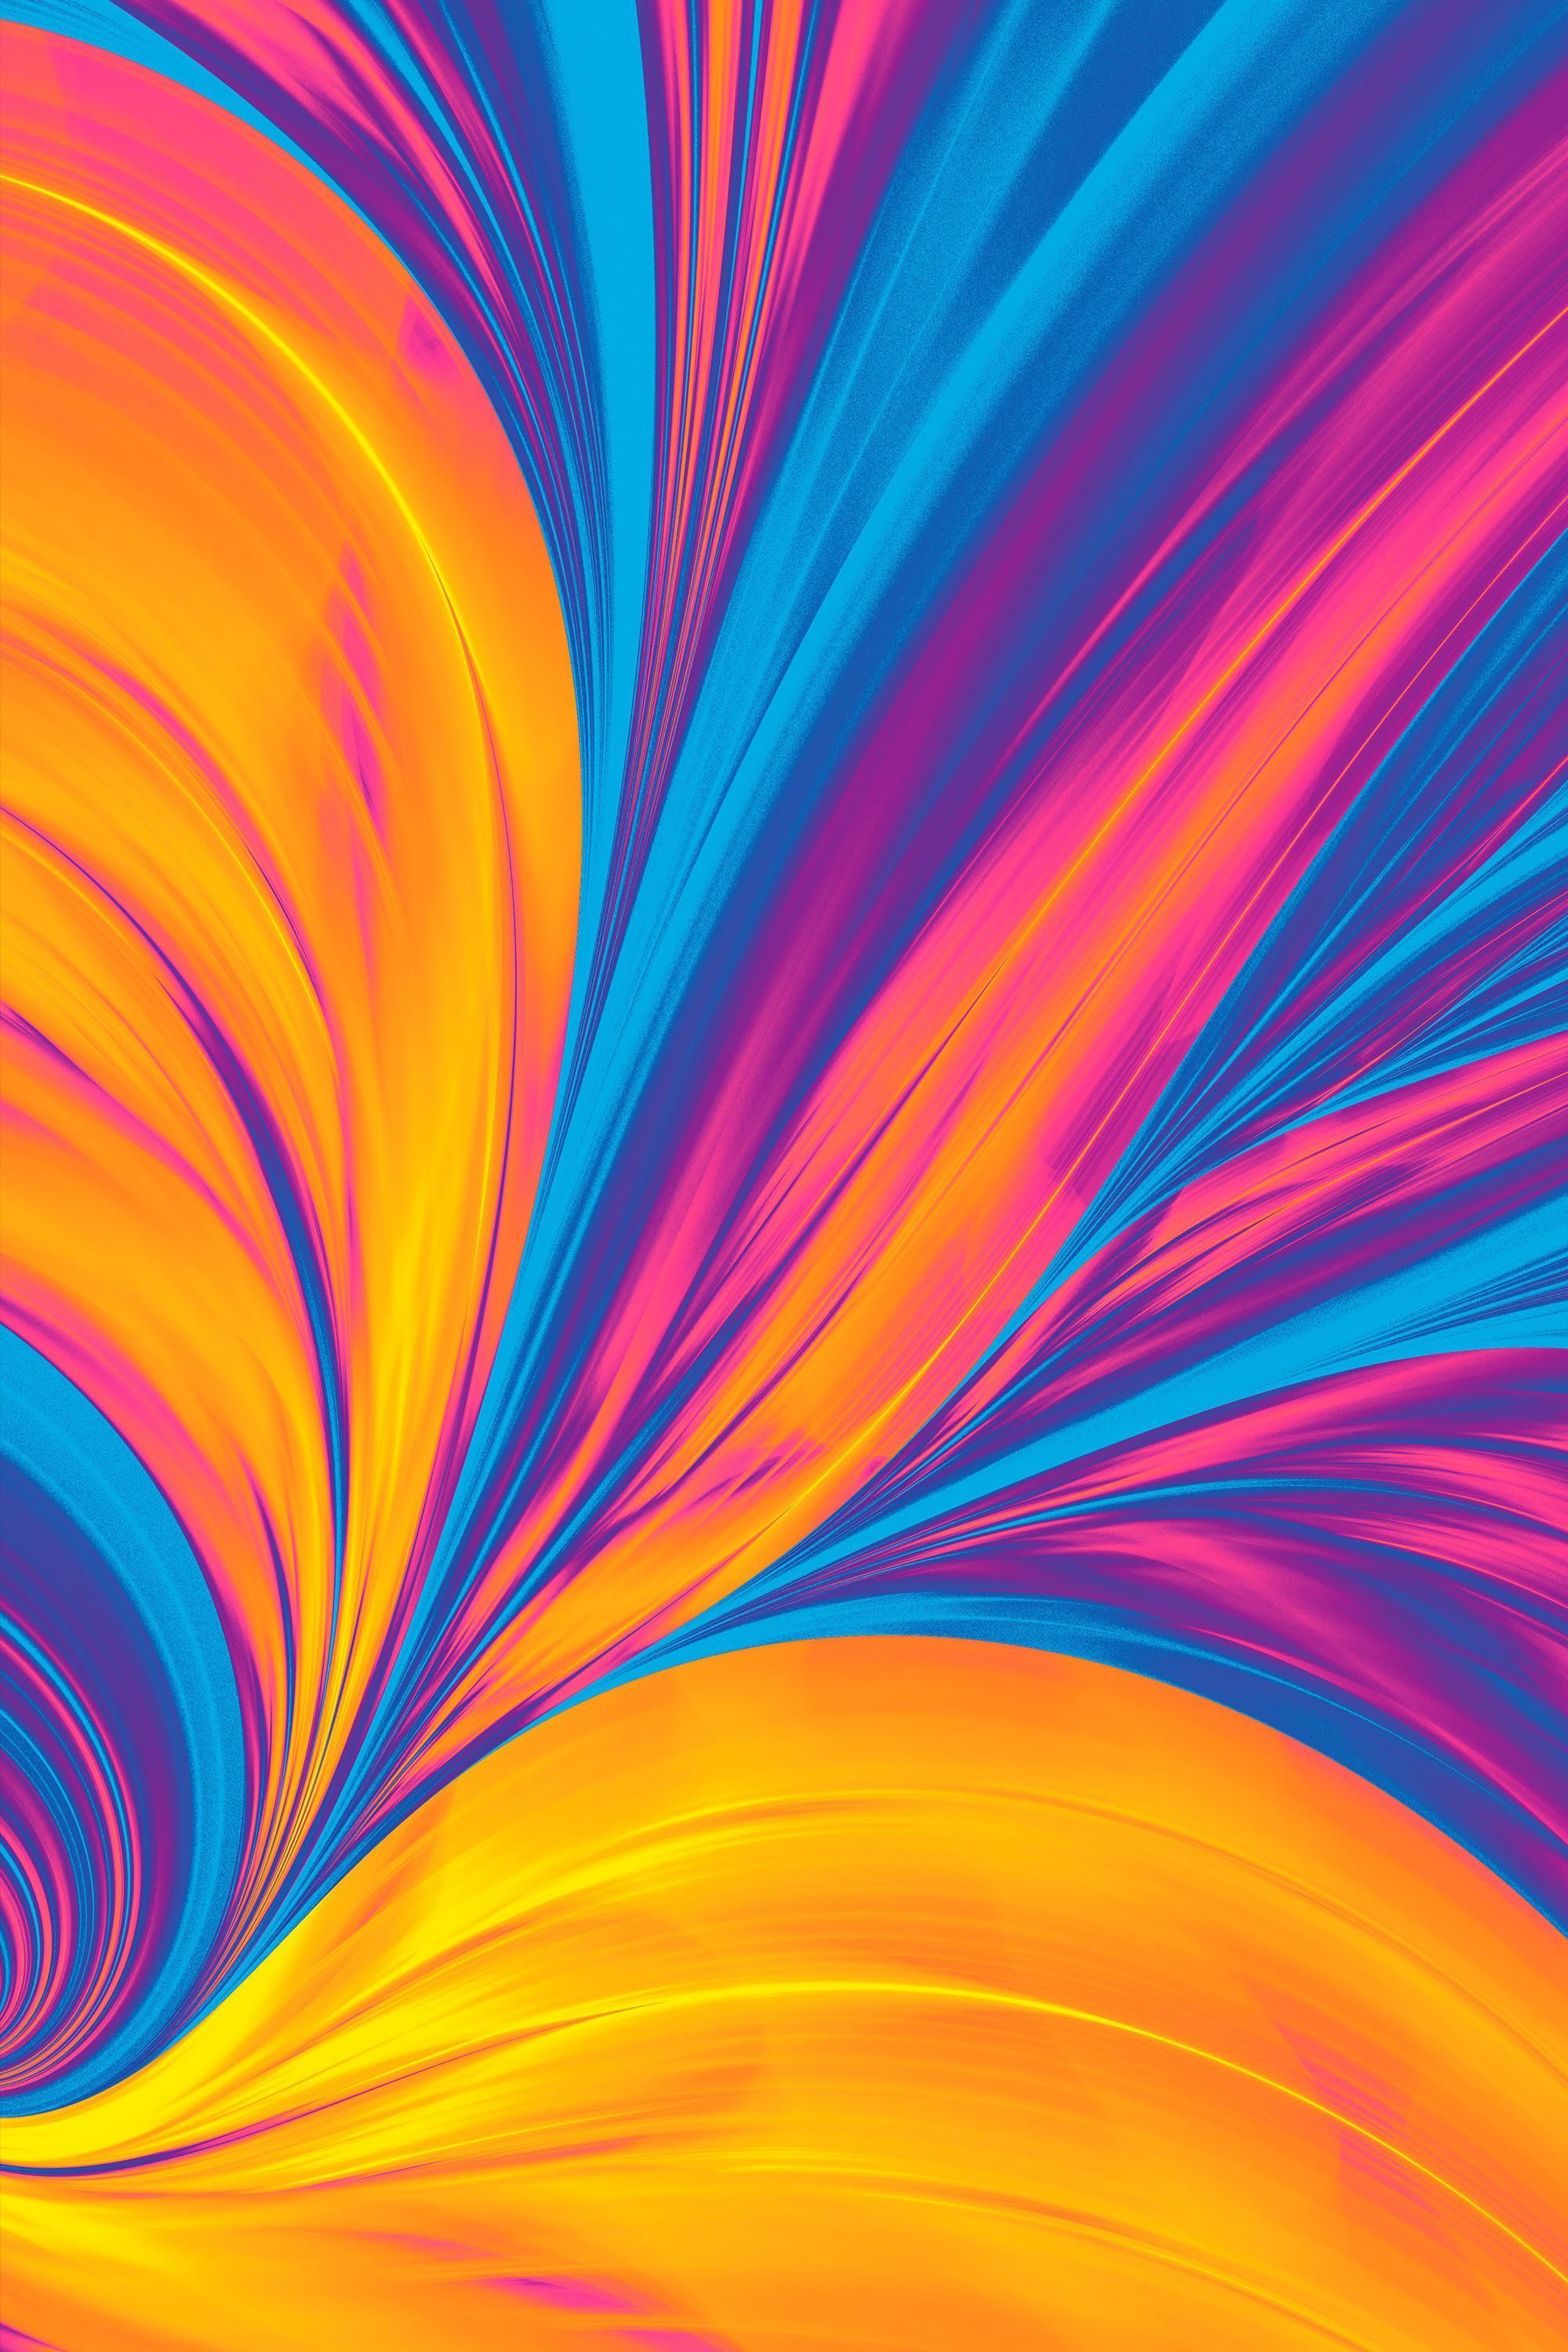  Coole Bunte Hintergrundbild 2000x3000. Color flow. Phone wallpaper, iPhone wallpaper image, Wallpaper diy crafts